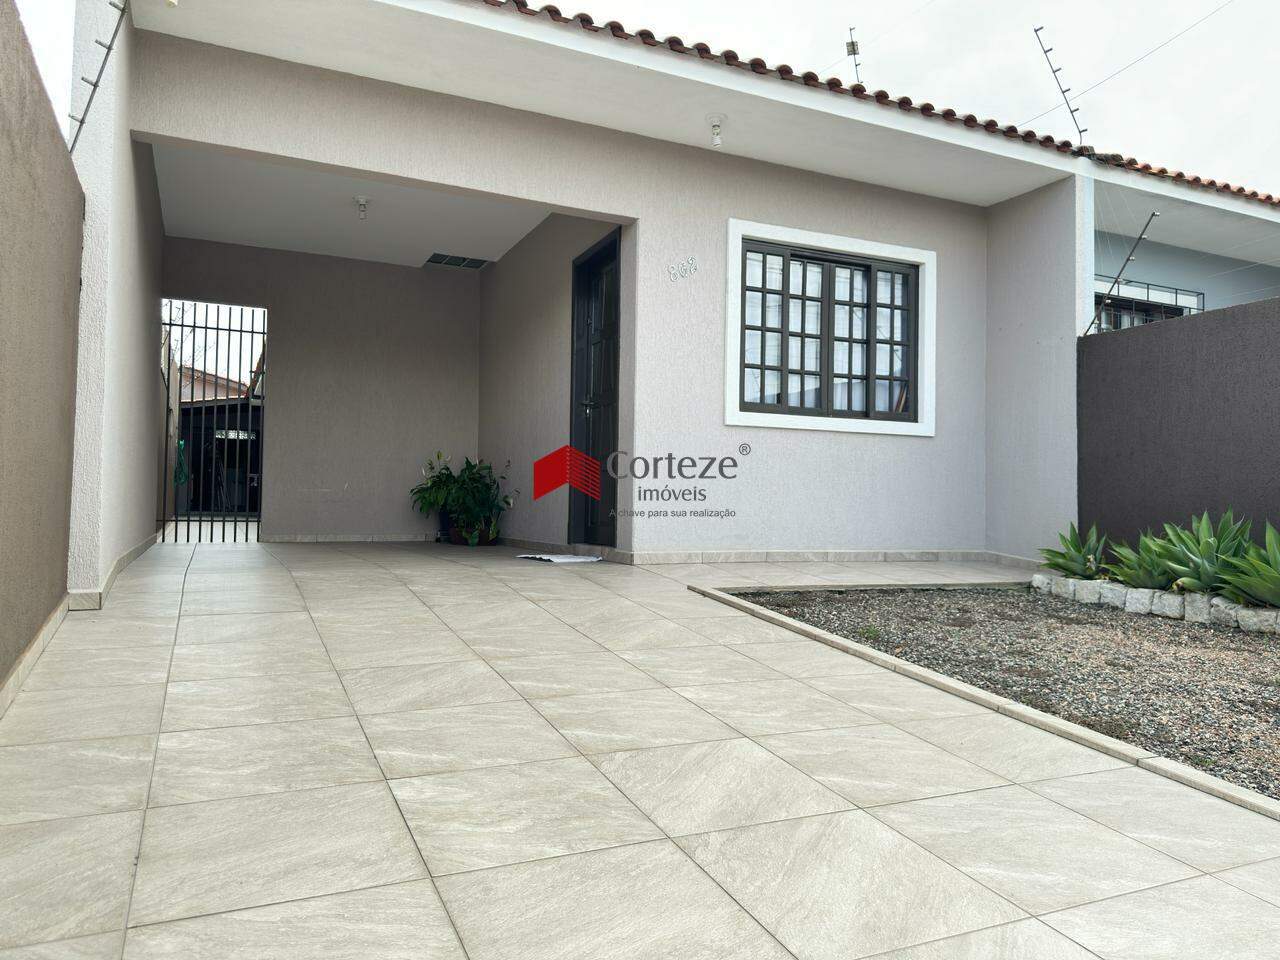 Casa à venda com: 2 quartos sendo 1 suíte, localizado no bairro Cruzeiro